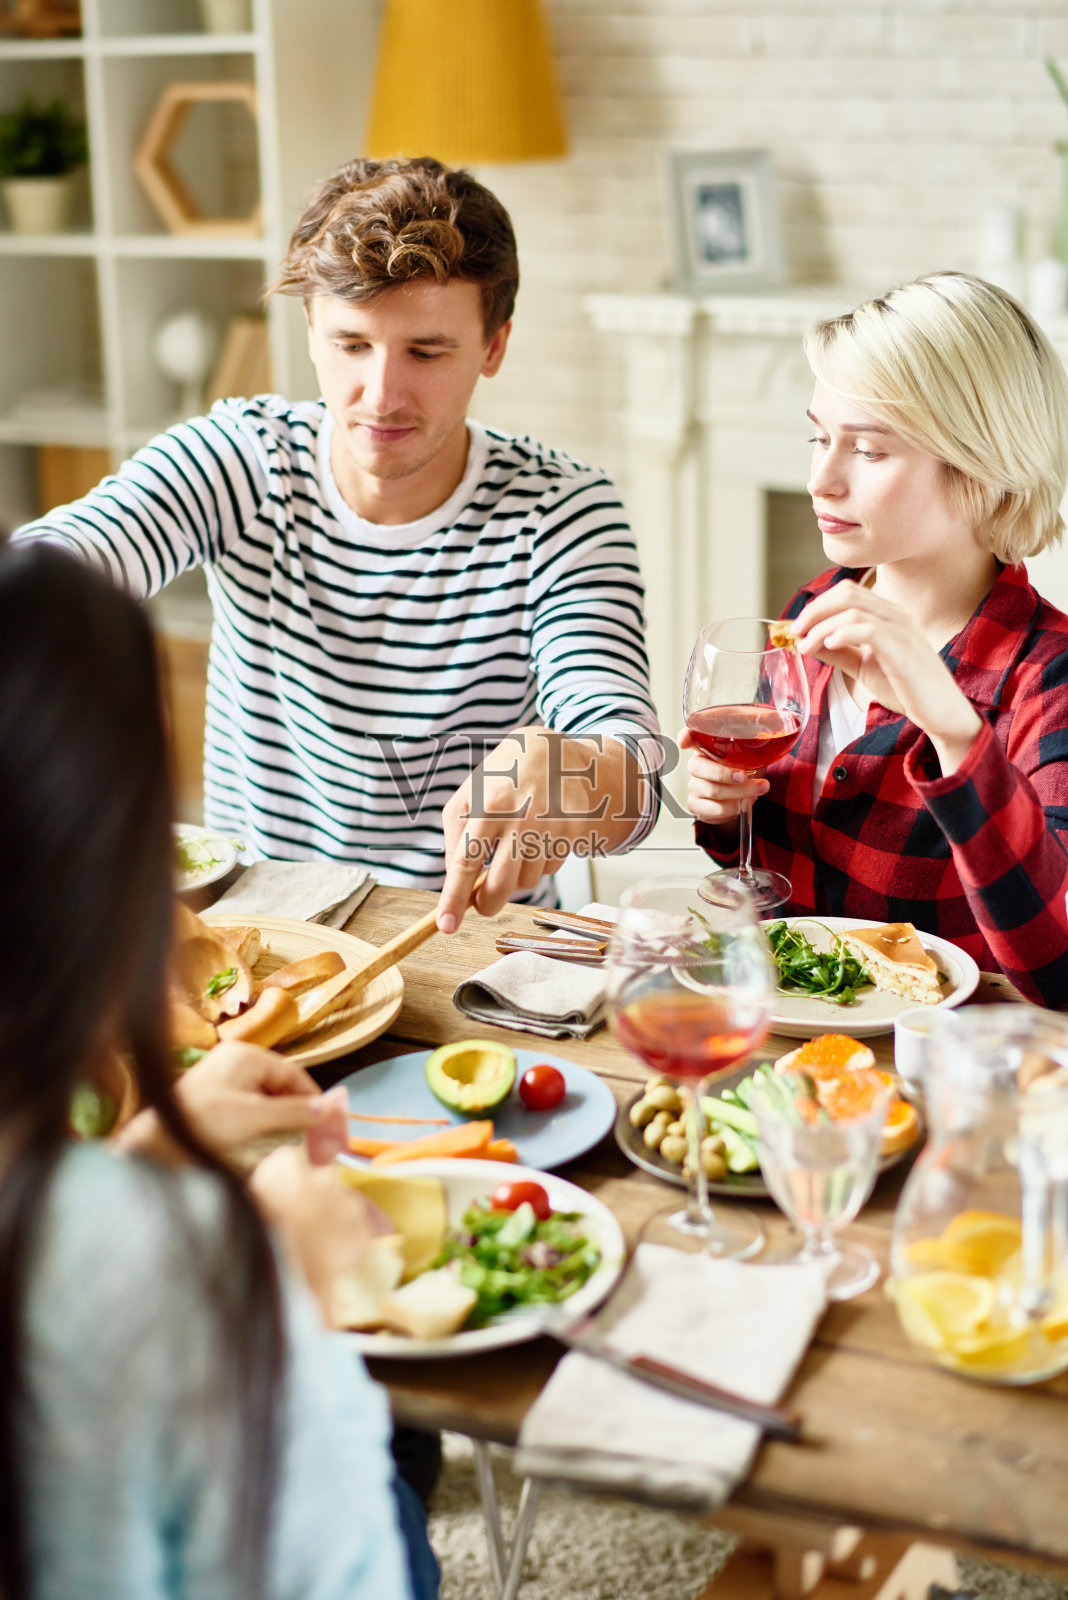 《现代人物》:在家里和朋友吃饭照片摄影图片